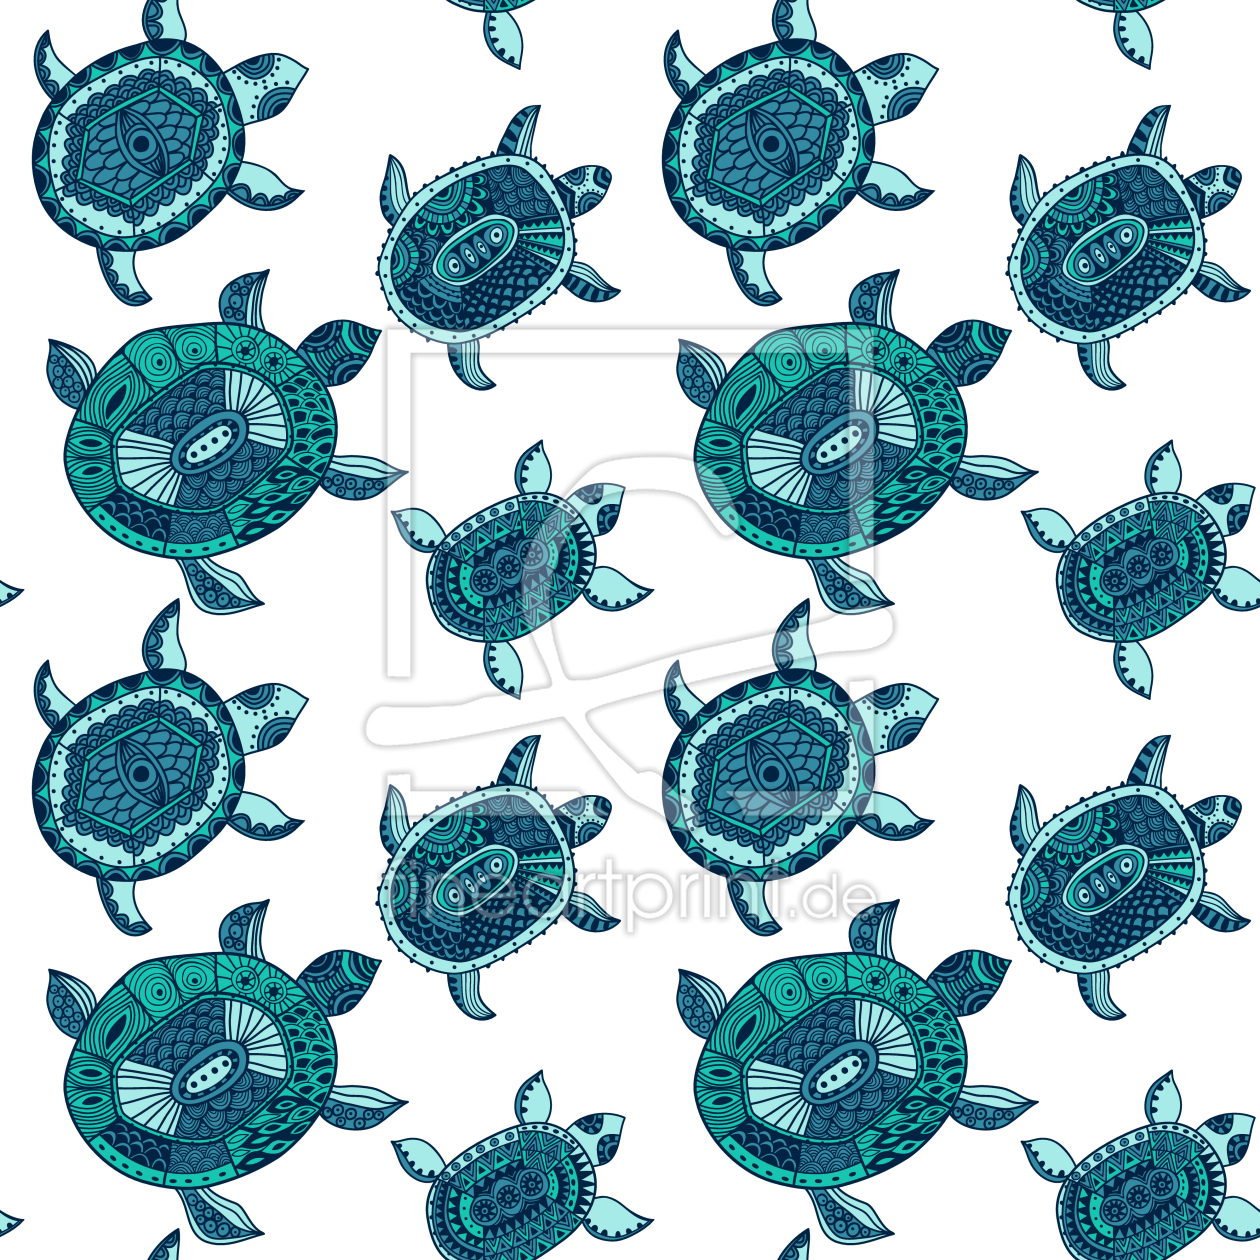 Bild-Nr.: 9005458 Die Fantastische Reise Der Smaragdschildkröten erstellt von patterndesigns-com